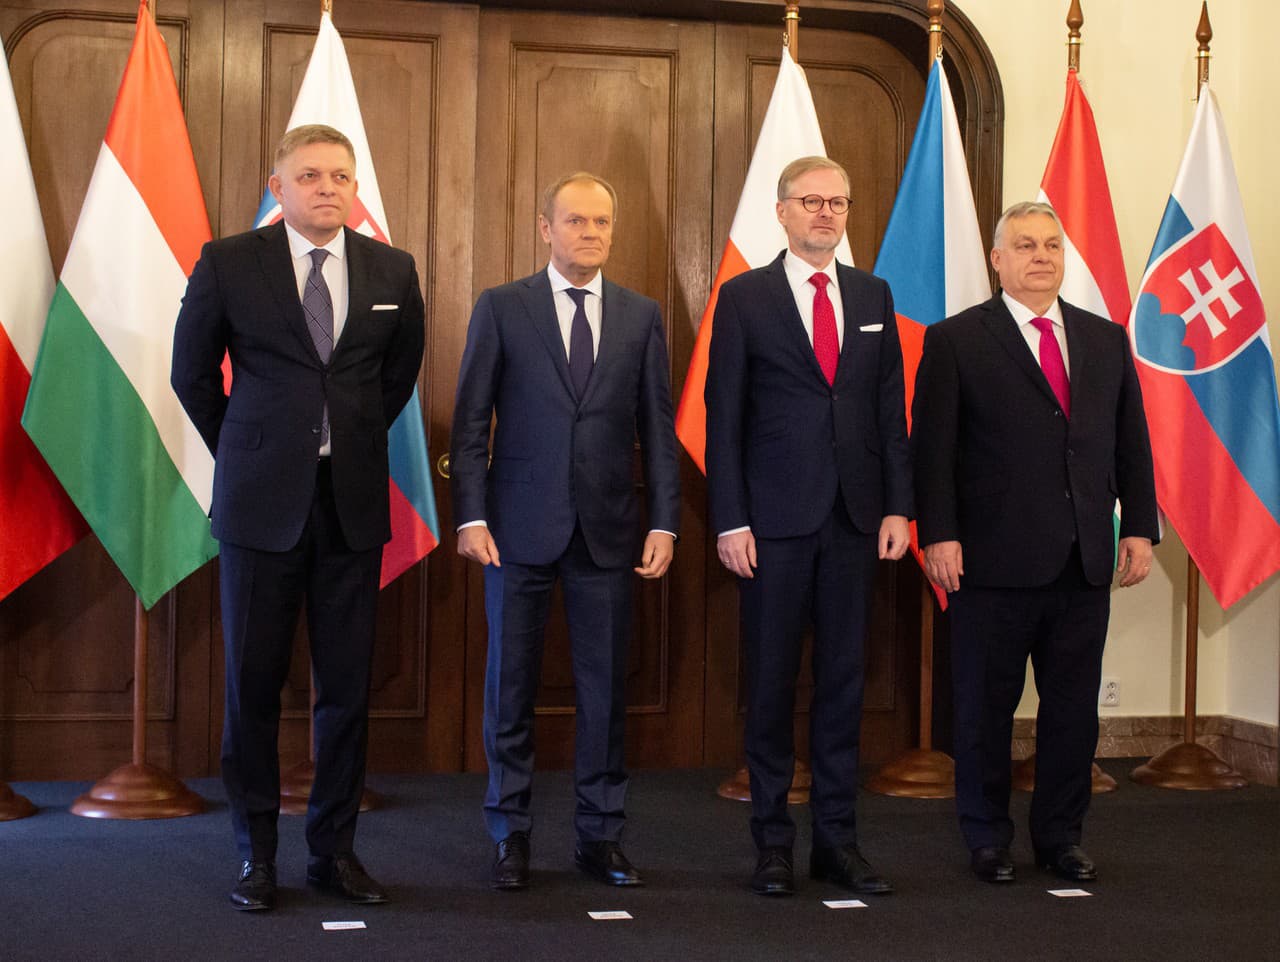 Zľava slovenský premiér Robert Fico, poľský premiér Donald Tusk, český premiér Petr Fiala a maďarský premiér Viktor Orbán na summite Vyšehradskej štvorky (V4) v Prahe.